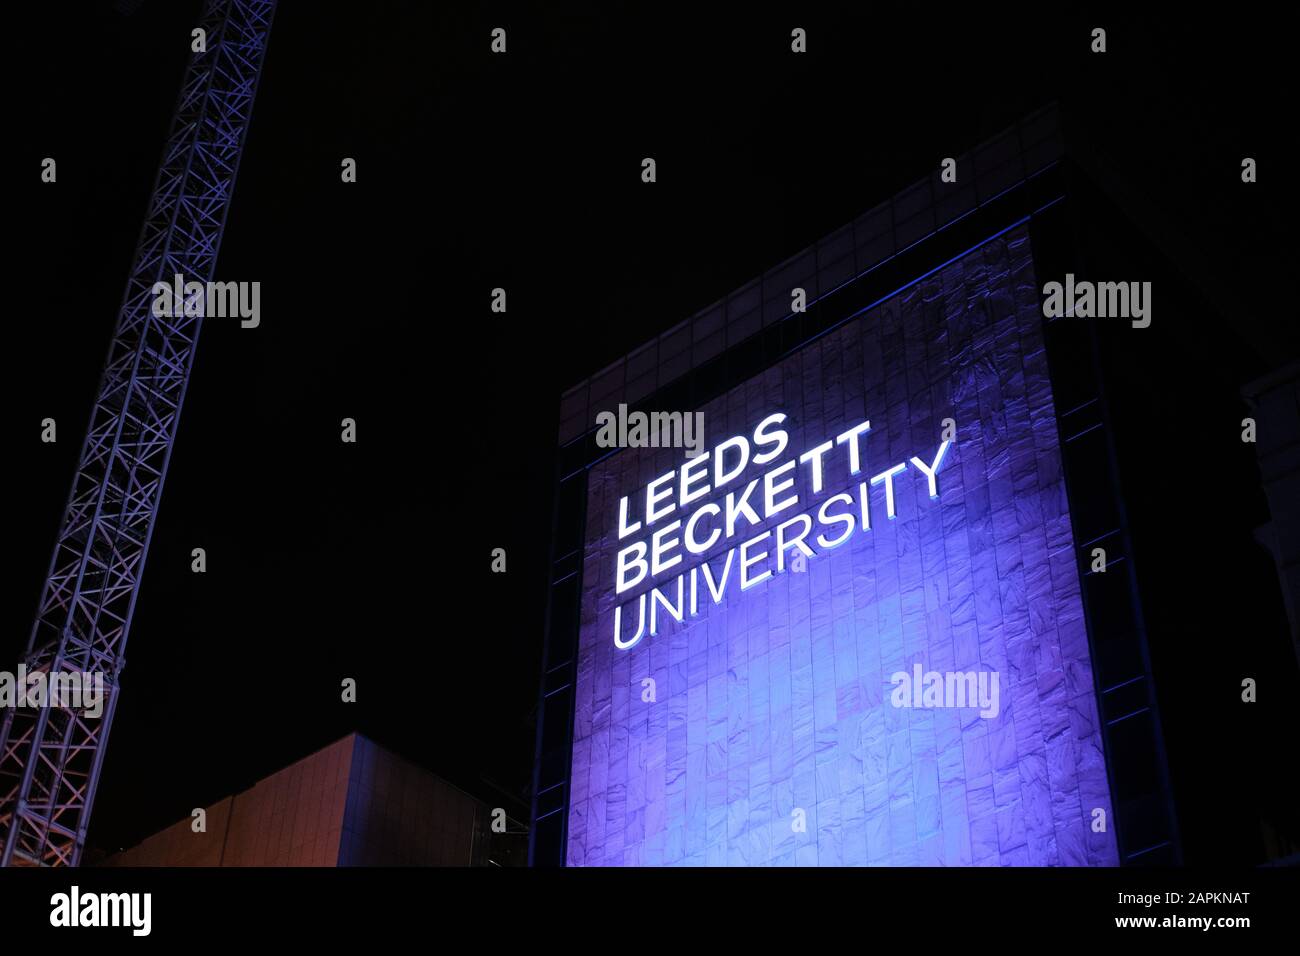 Leeds, ROYAUME-UNI - 11 janvier 2020: Gros plan horizontal de Leeds Beckett University Lite vers le haut la nuit Banque D'Images